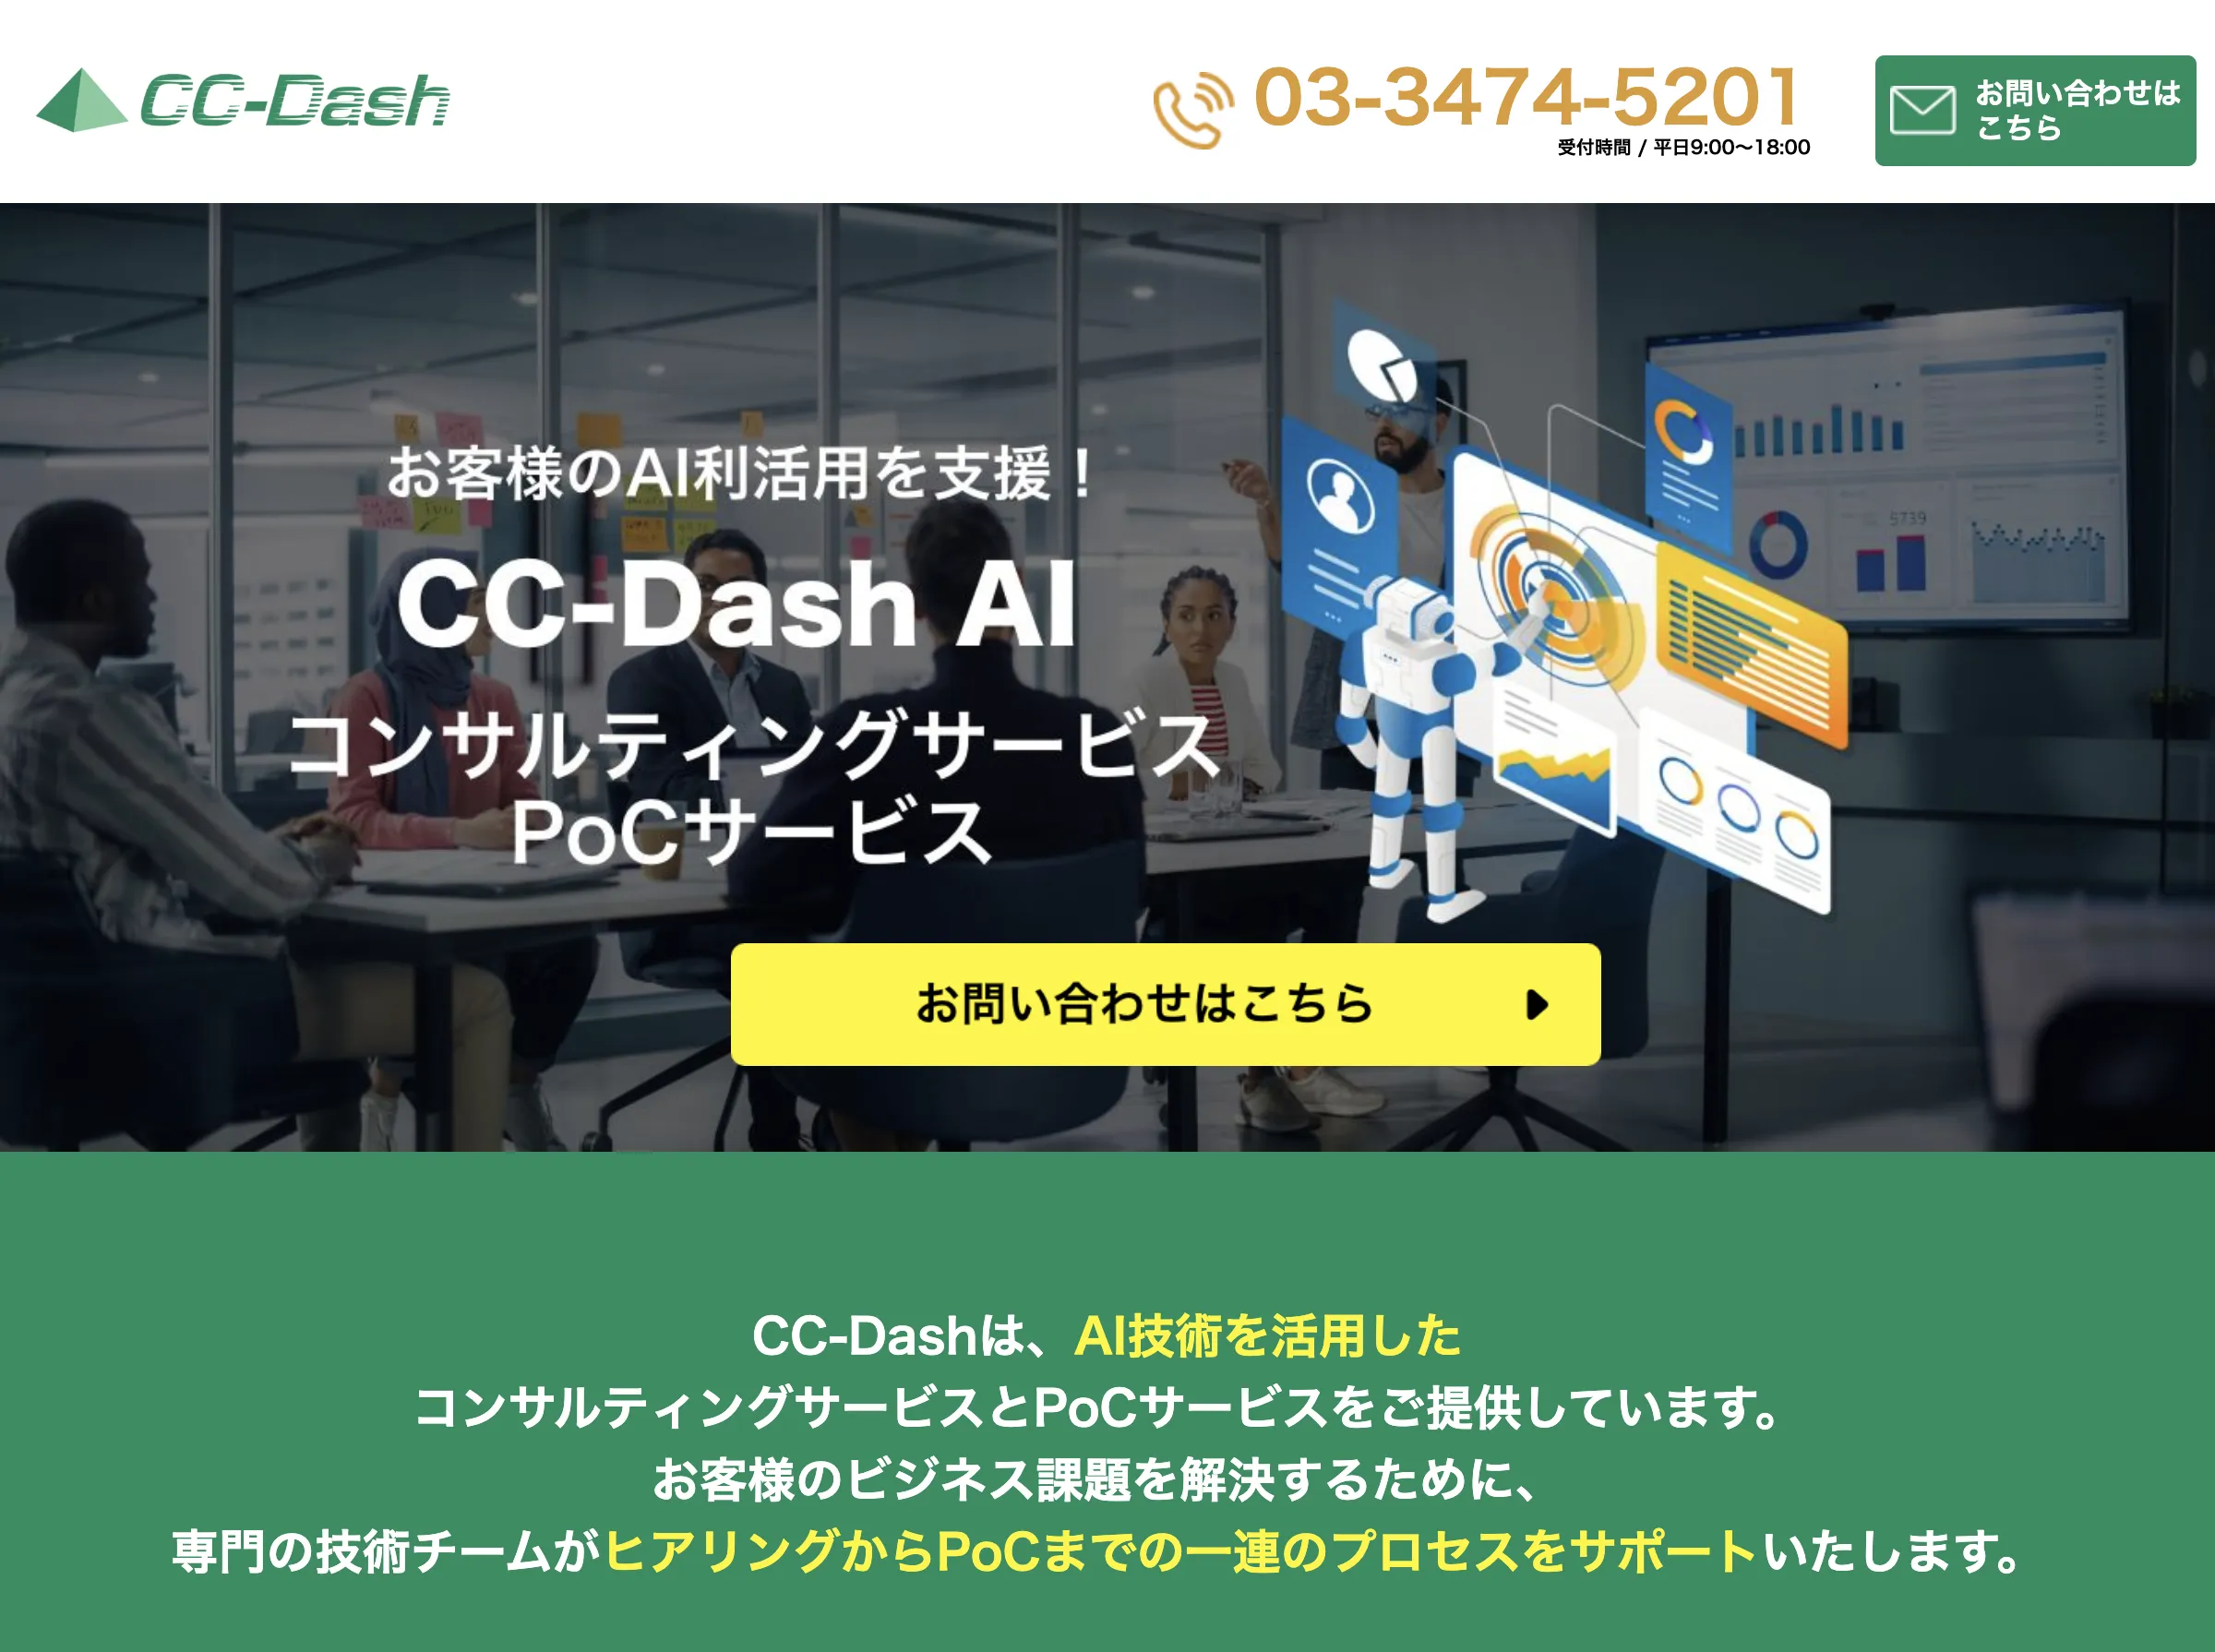 CC-Dash AI(株式会社 クロスキャット)